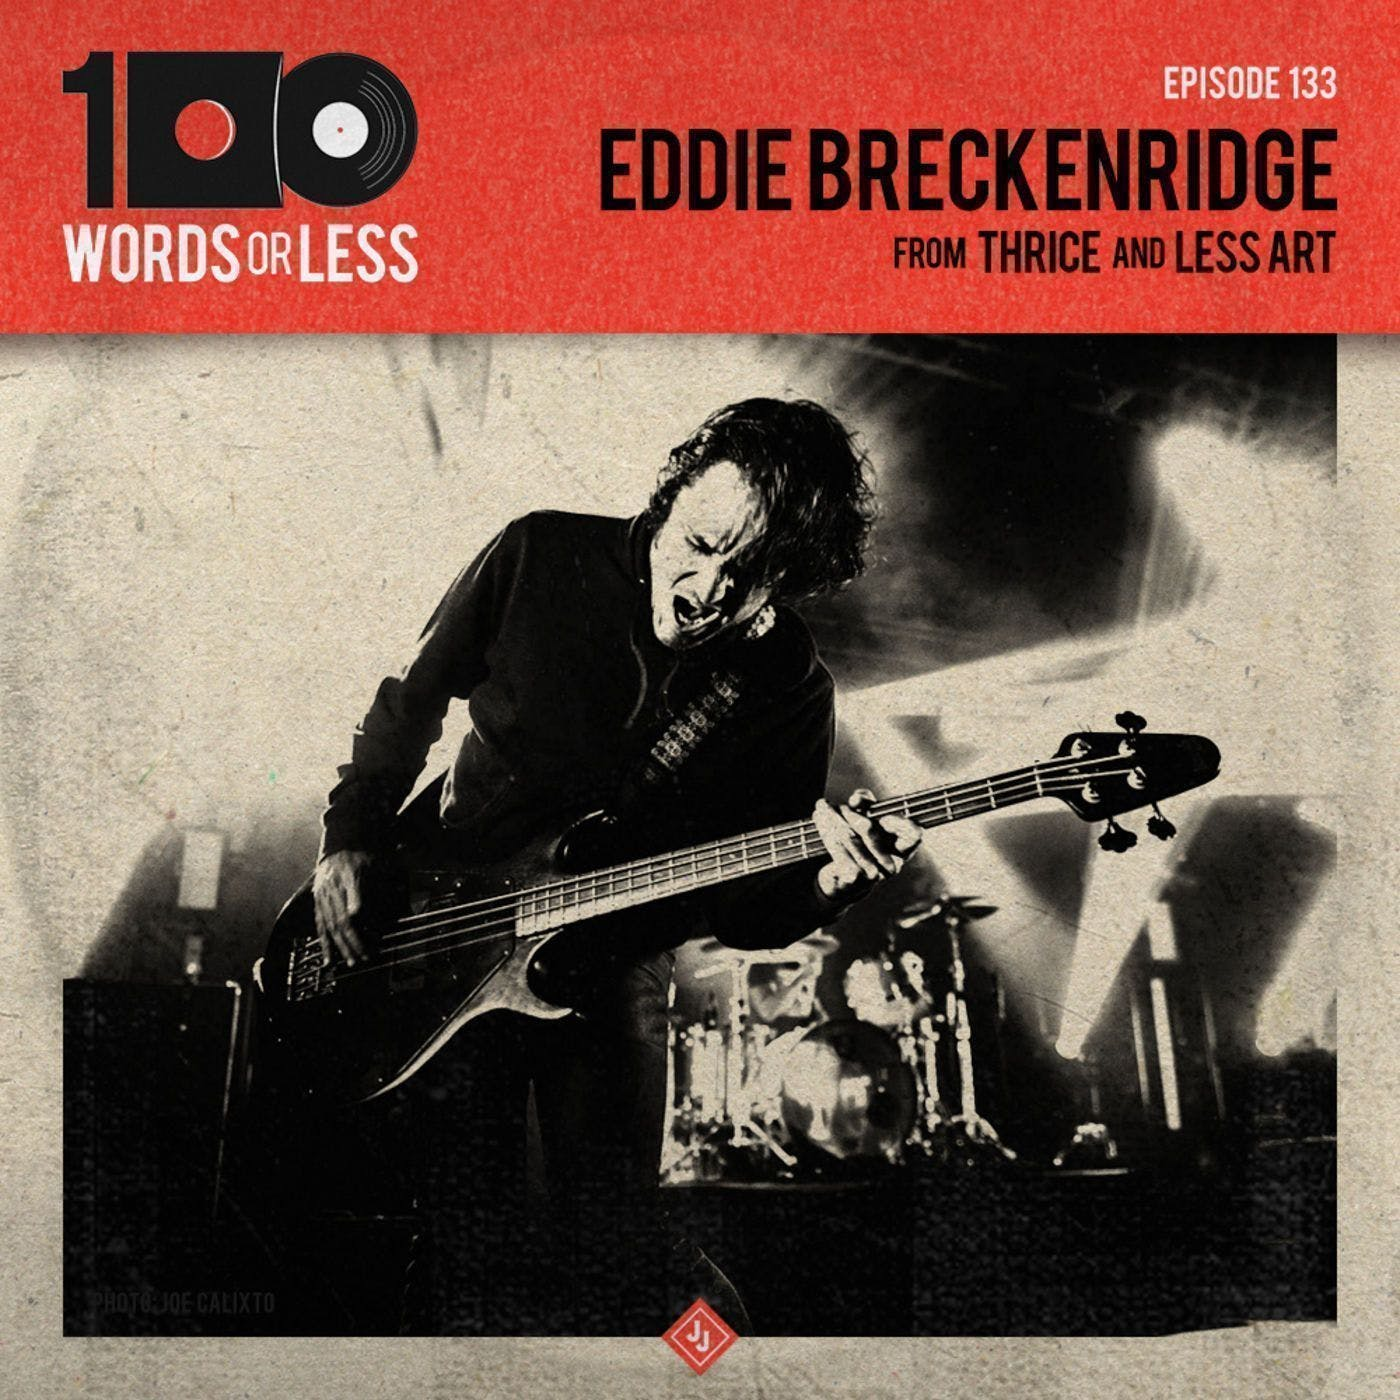 Eddie Breckenridge from Thrice